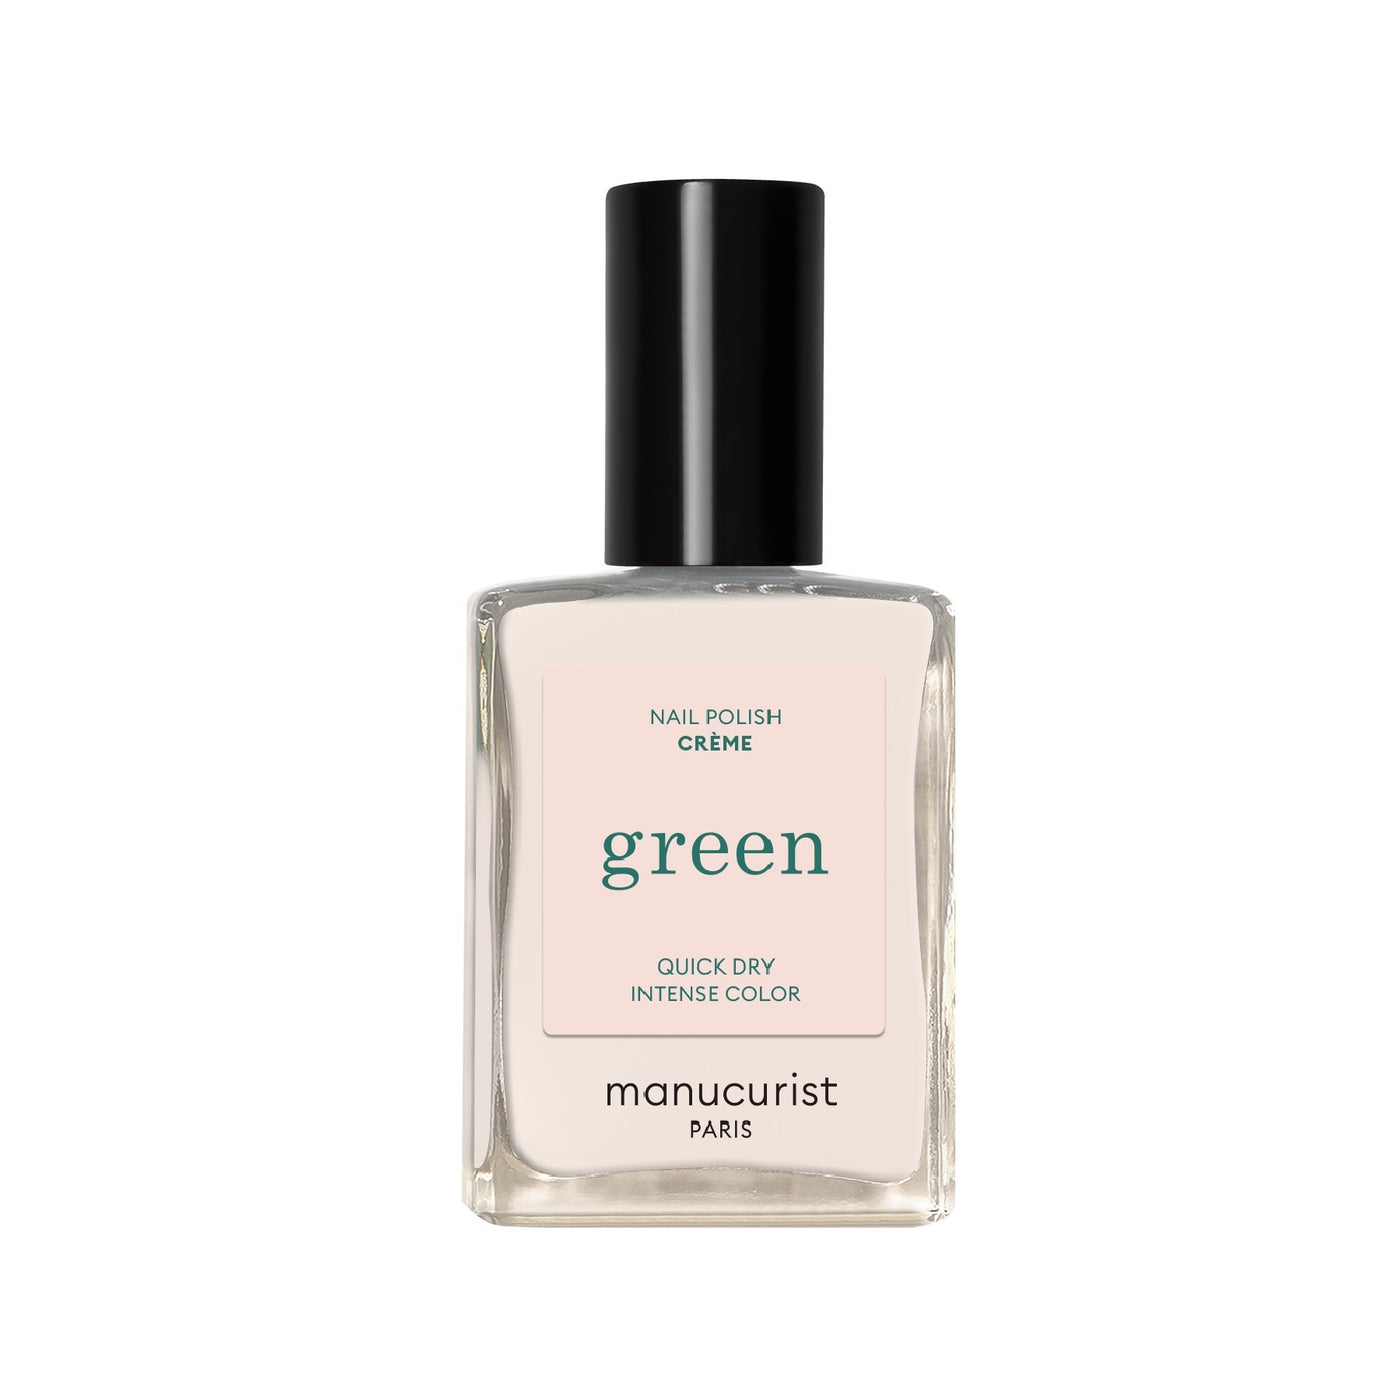 Manucurist Green Nail Polish - Creme